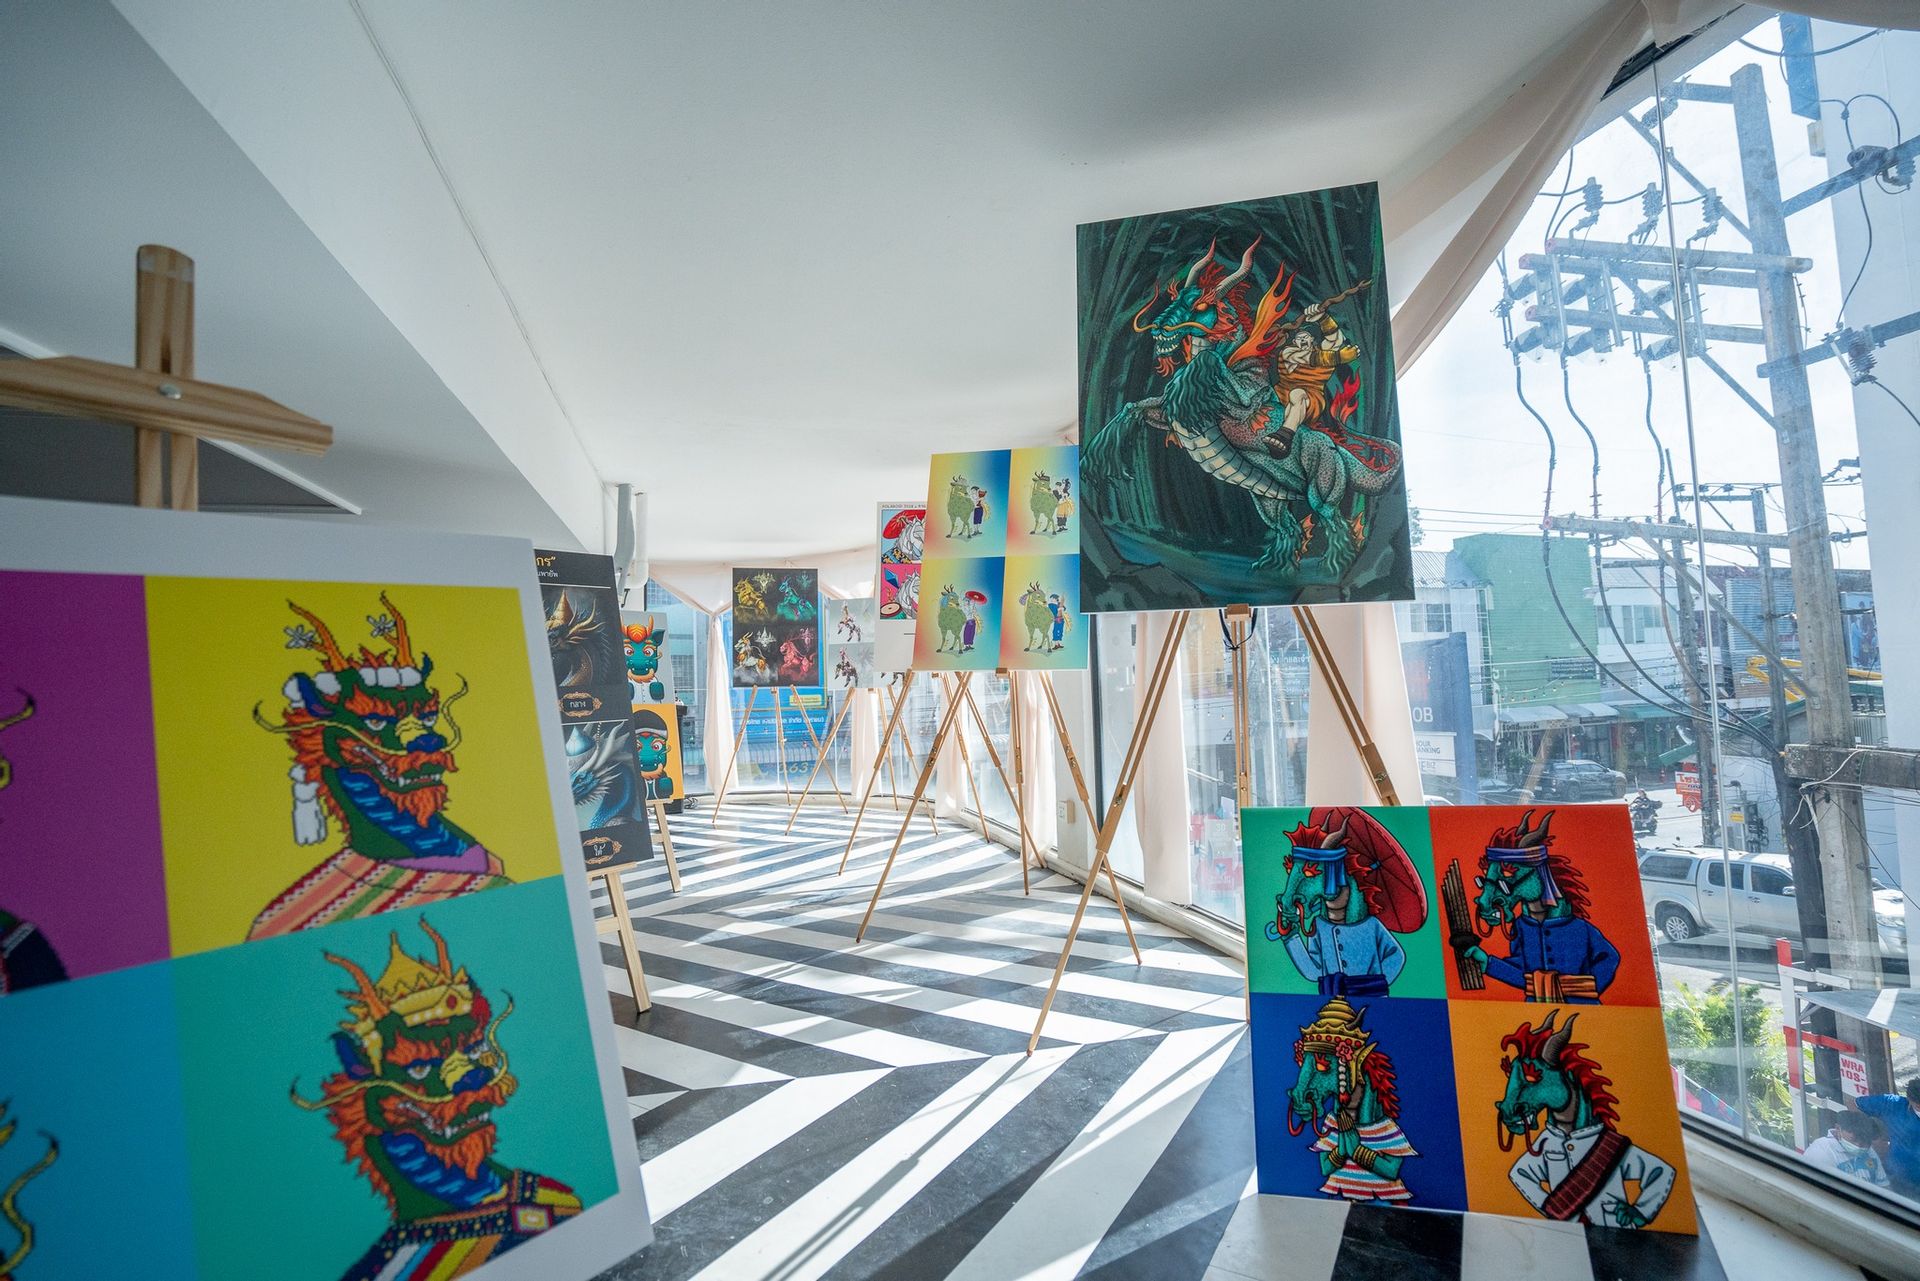 ทน.อุบลราชธานีชูงาน“UBON ART FEST 2022”  หนุนวัฒนธรรมท้องถิ่นสร้างสรรค์การท่องเที่ยว